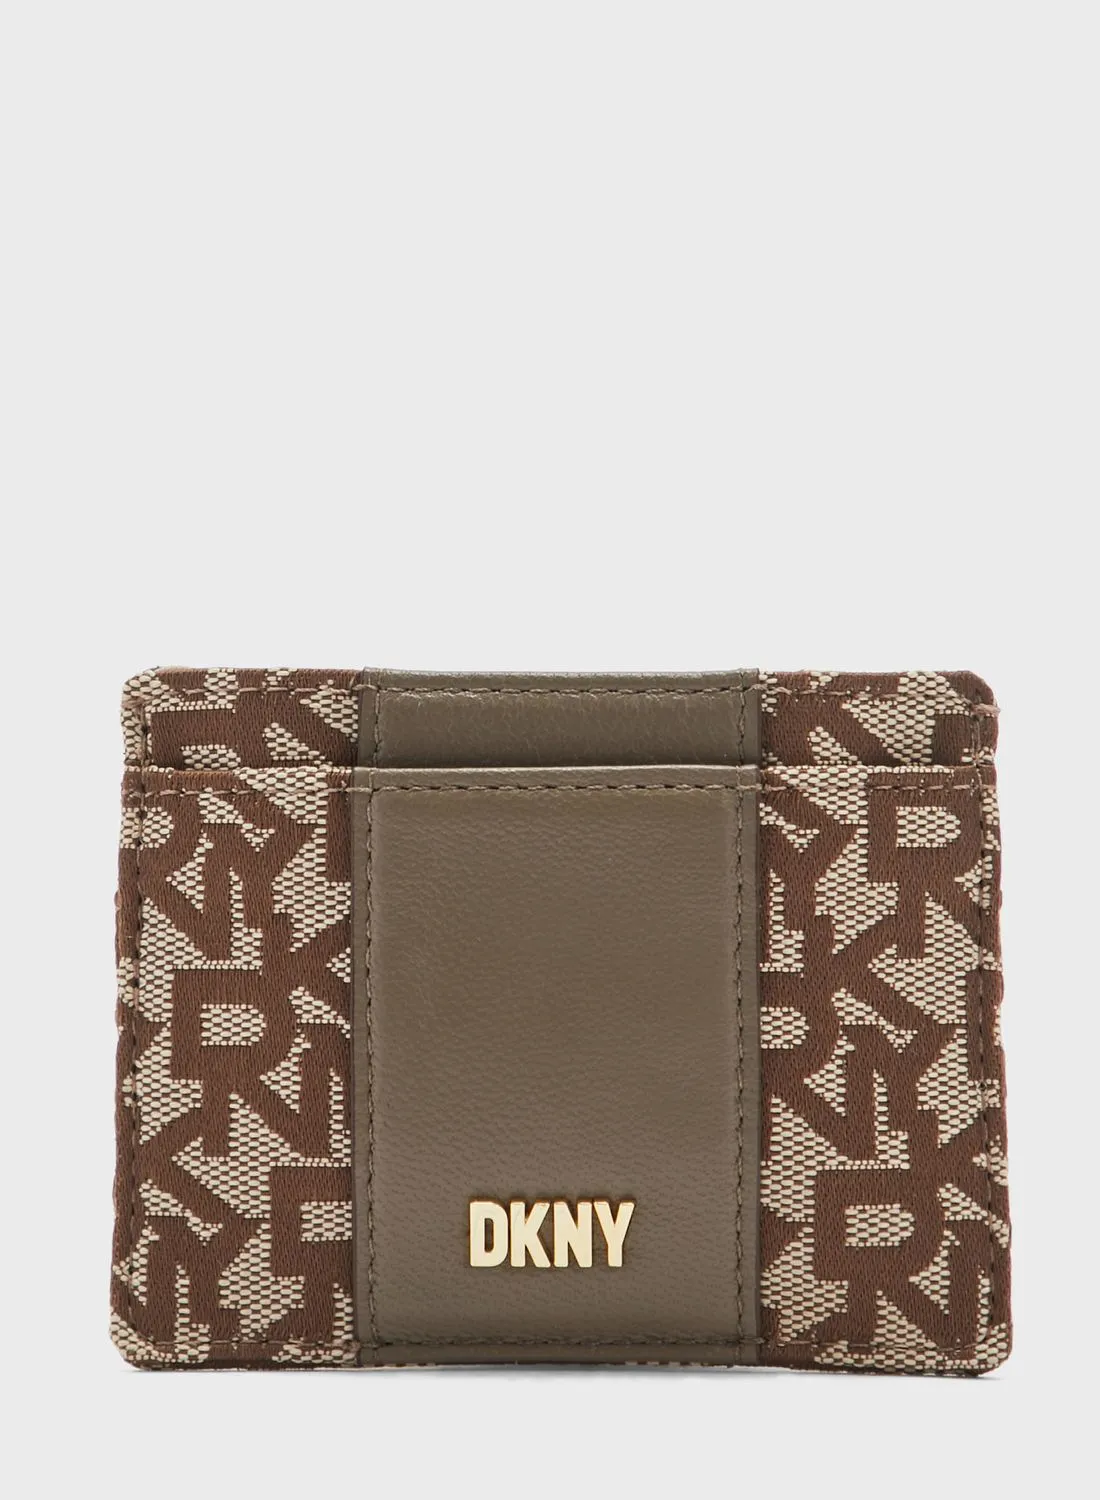 DKNY Quincy Card Case Bag